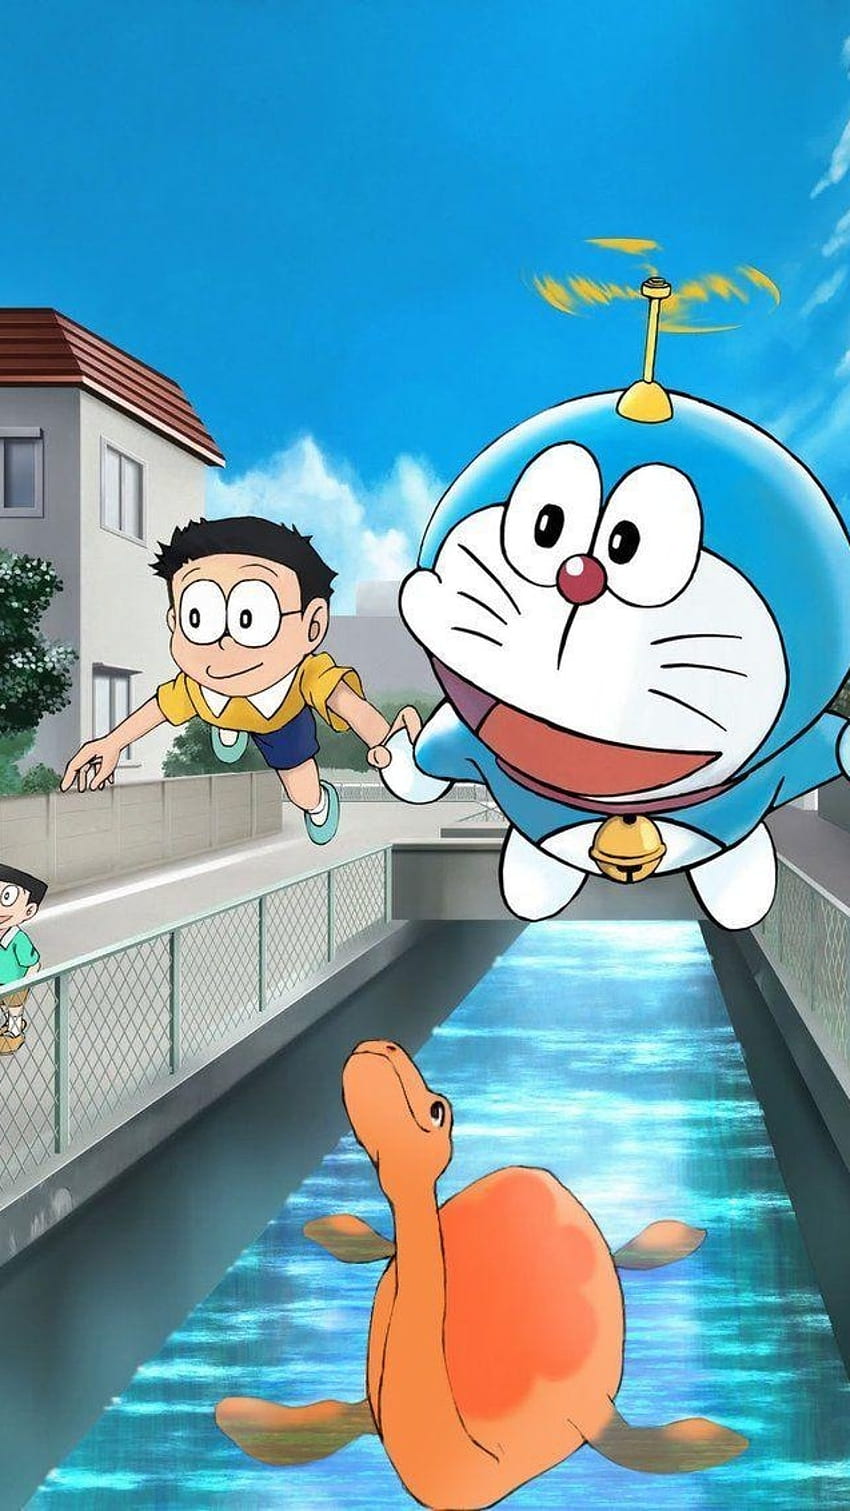 Shinchan and Doraemon Wallpaper là một tuyệt phẩm nghệ thuật Anime đầy màu sắc và độc đáo. Hãy xem để trải nghiệm niềm vui từ hình ảnh này.